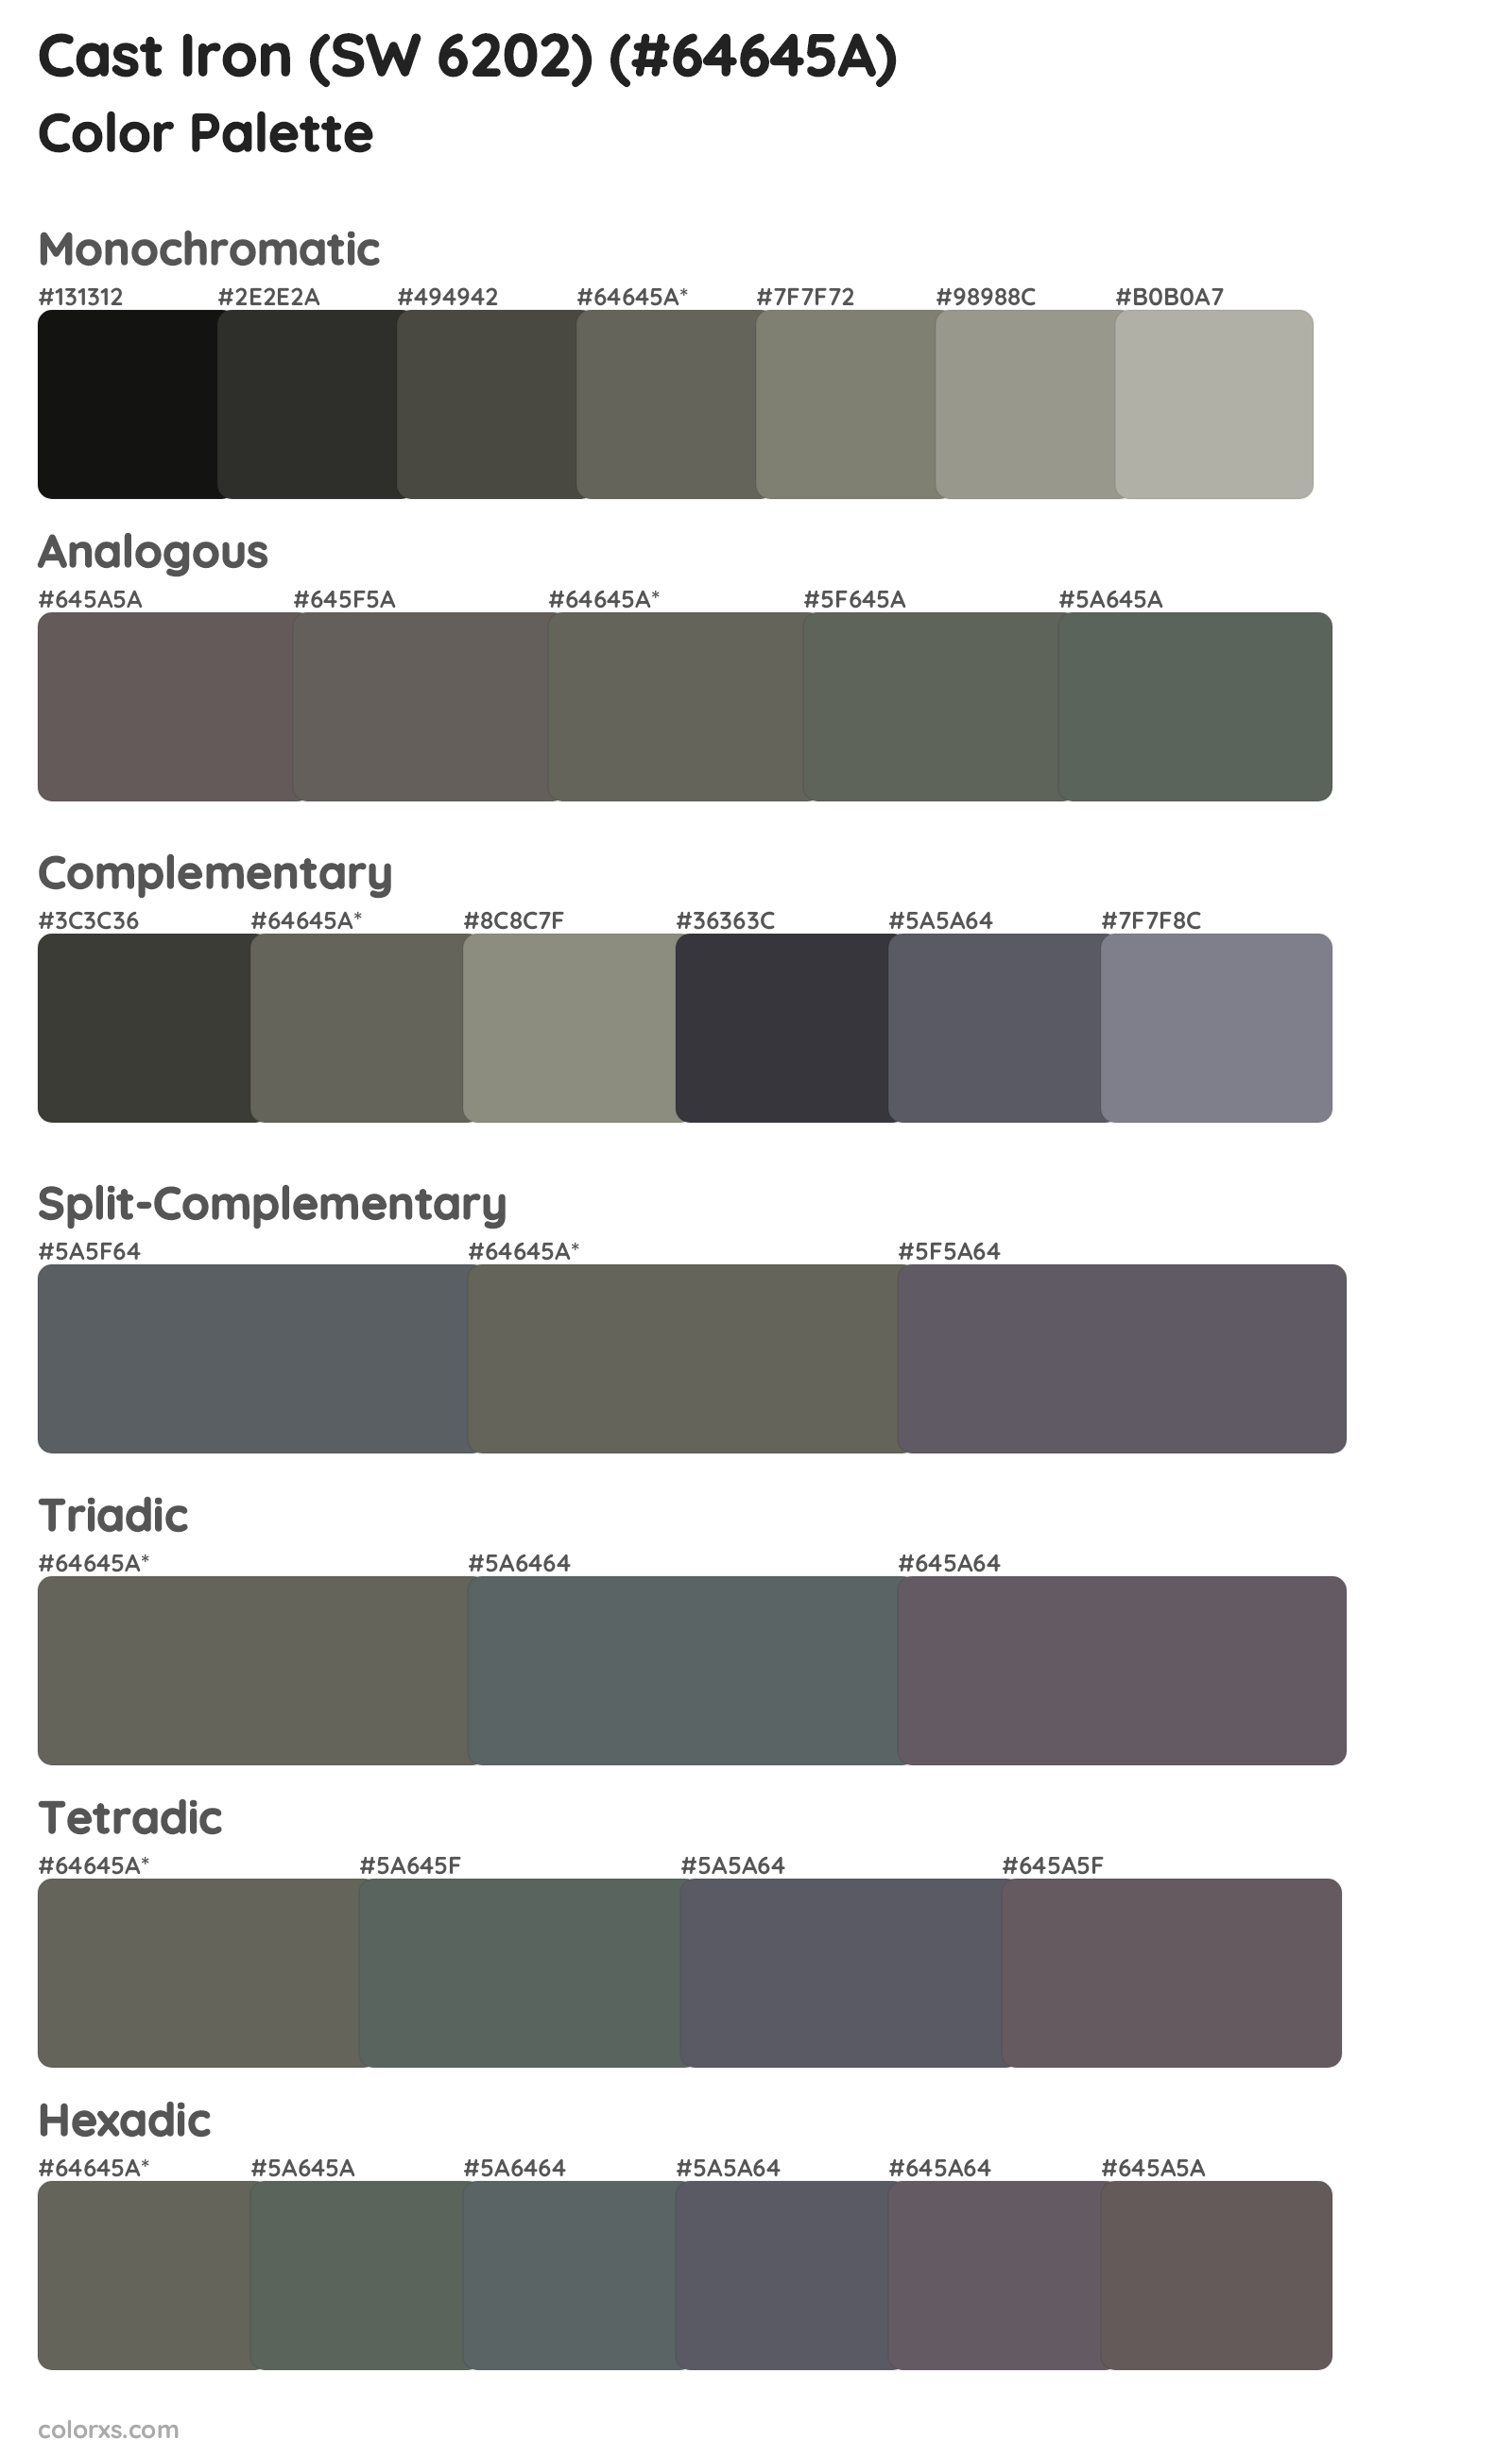 Cast Iron (SW 6202) Color Scheme Palettes